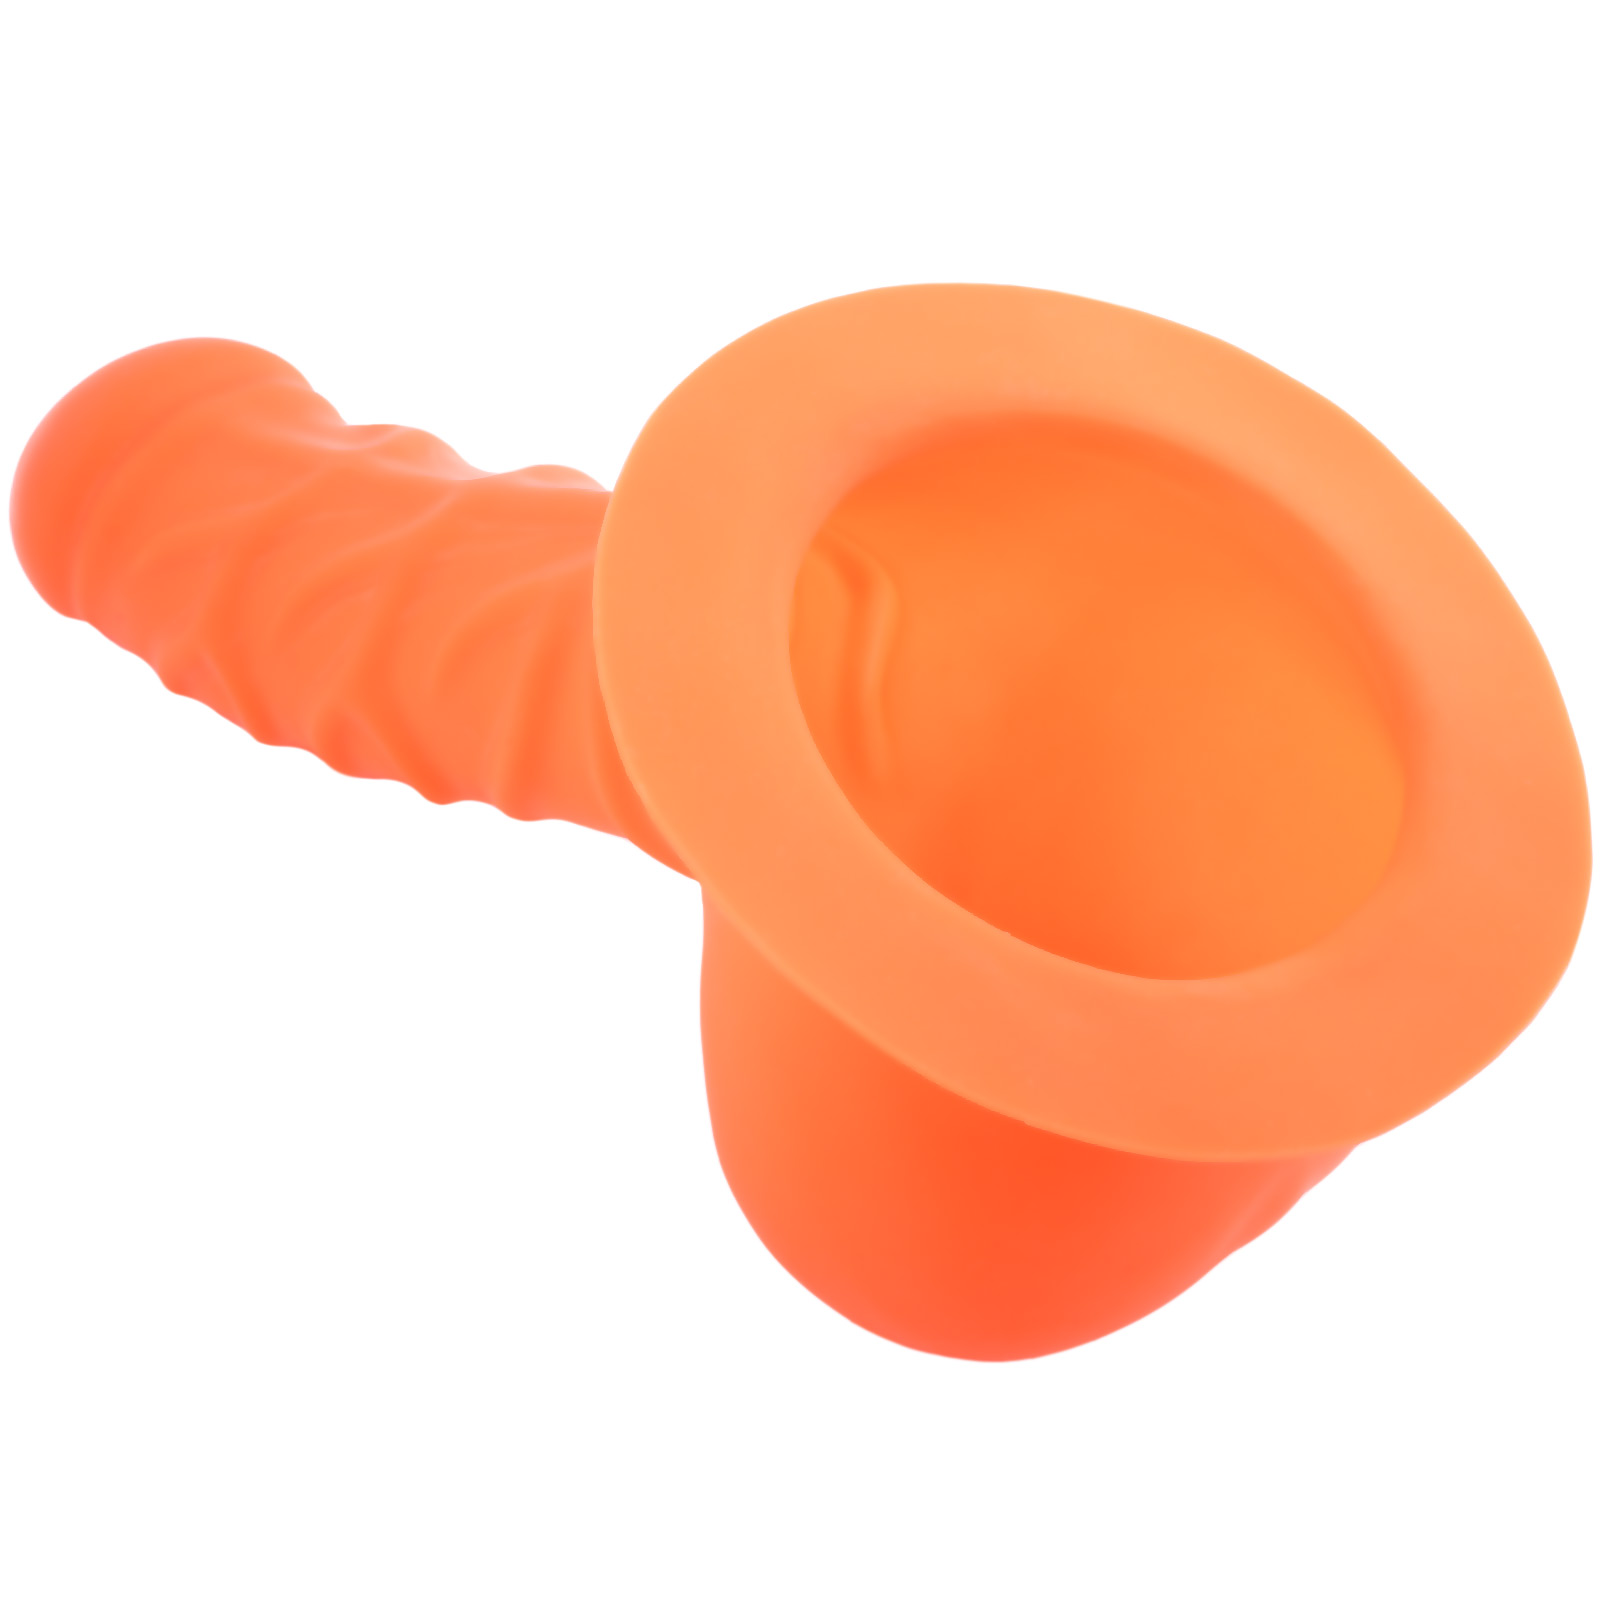 Toylie Latex-Penishülle «FRANZ» neon-orange, mit Basis-Platte zum Ankleben an Latexkleidung